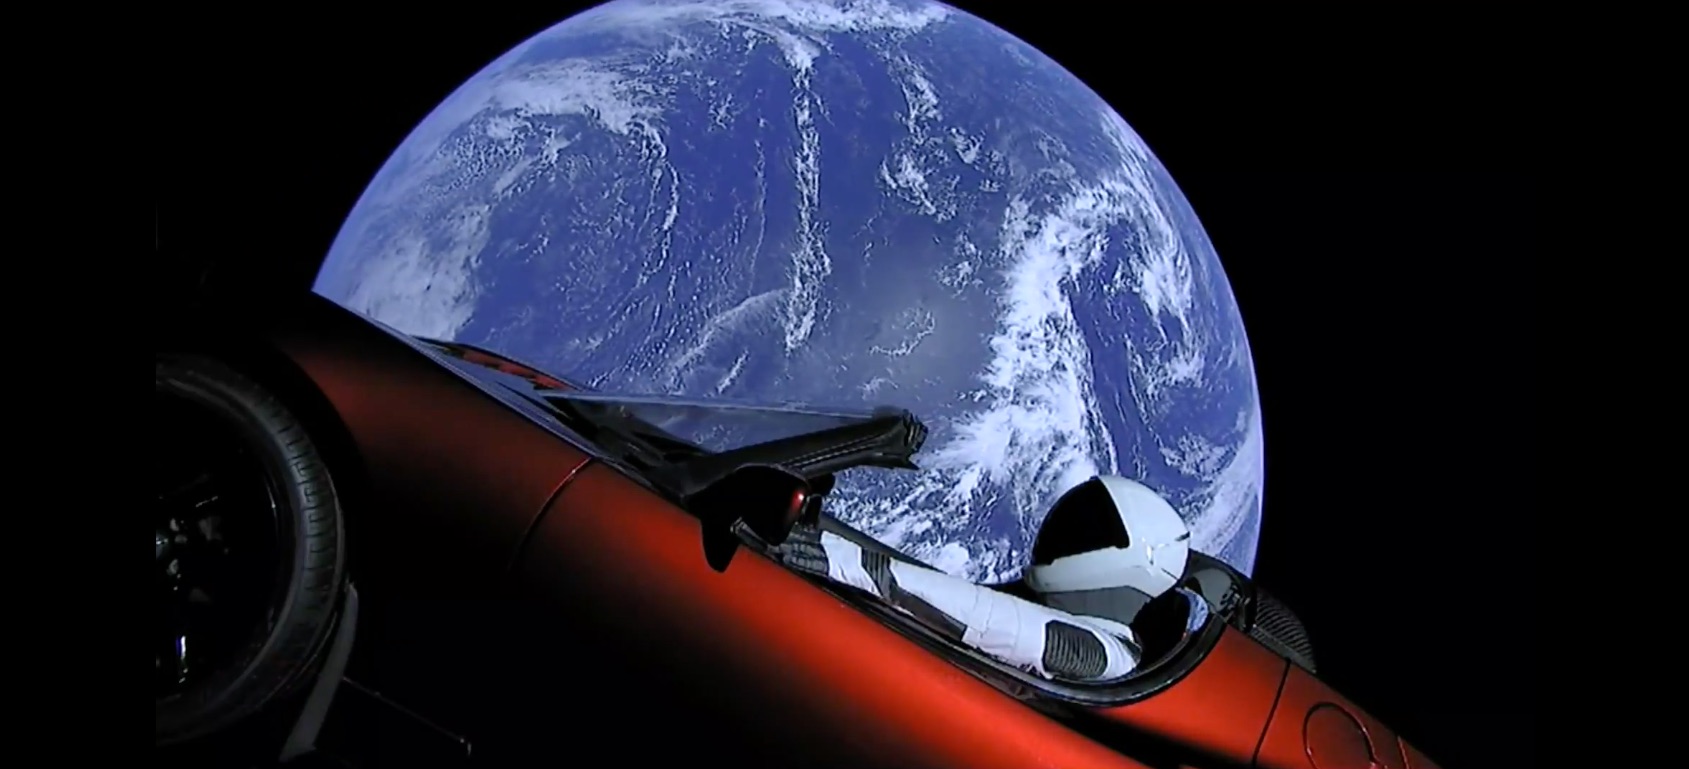 Особистий Tesla Roadster Ілона Маска продовжує мандрівку космосом